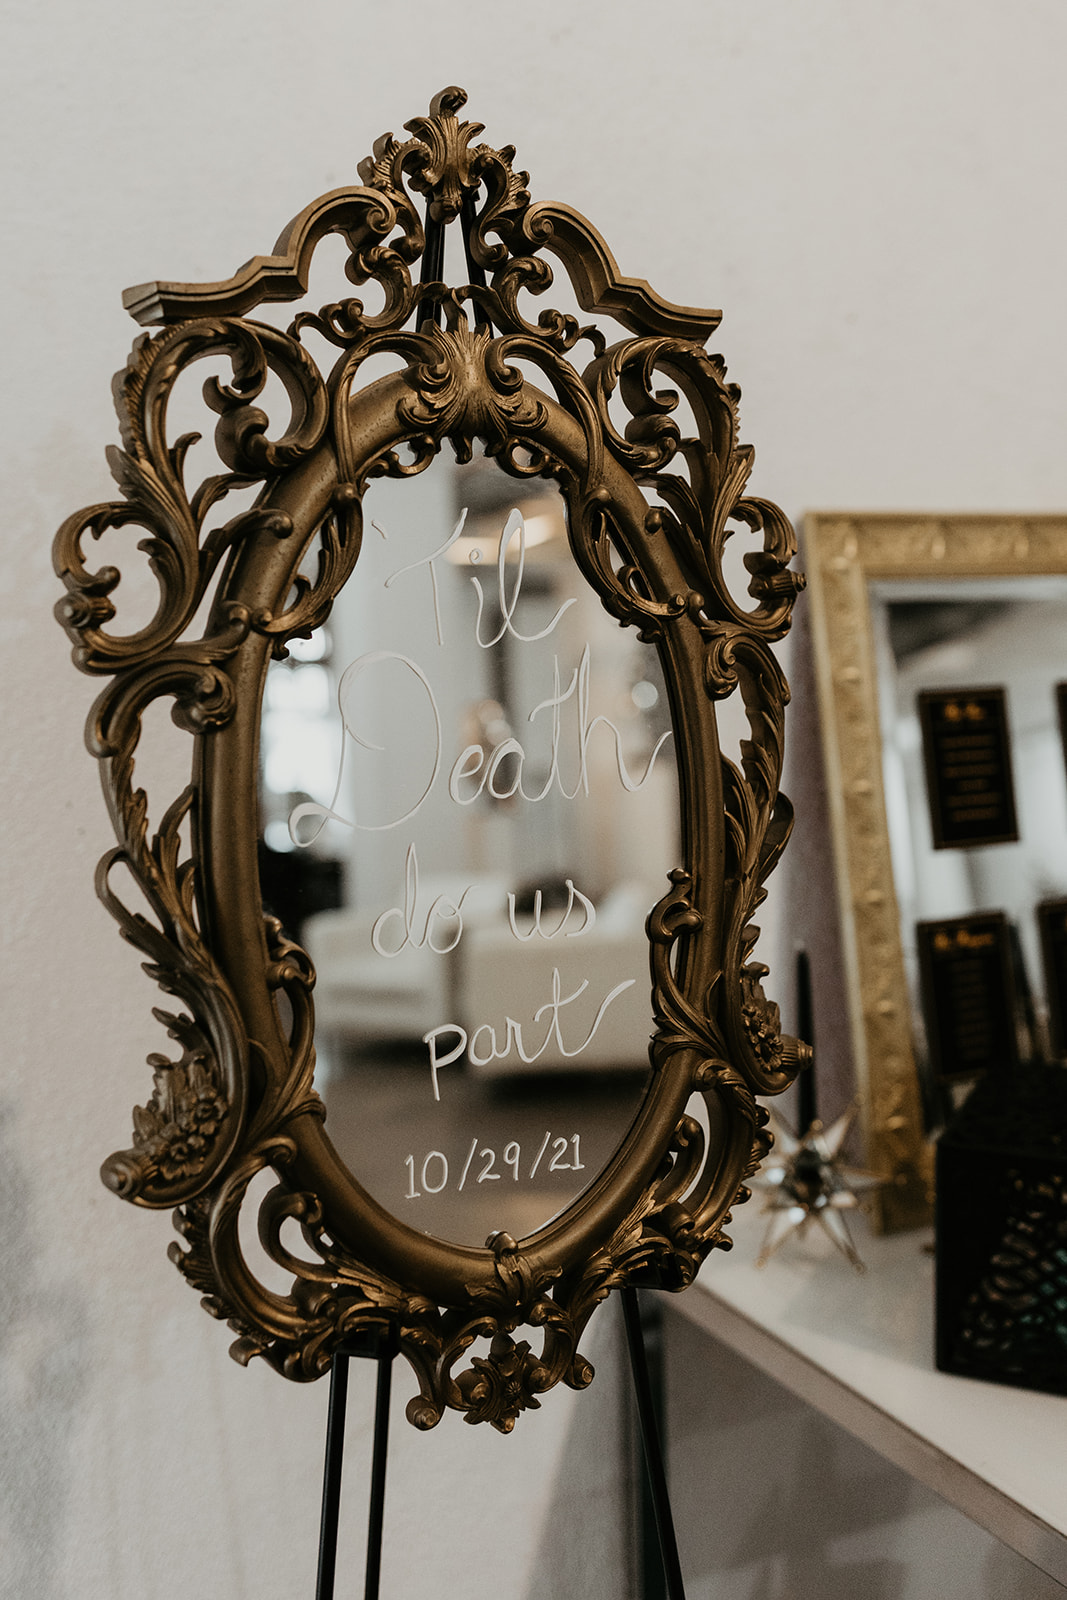 wedding signage on a mirror " til death do us part"